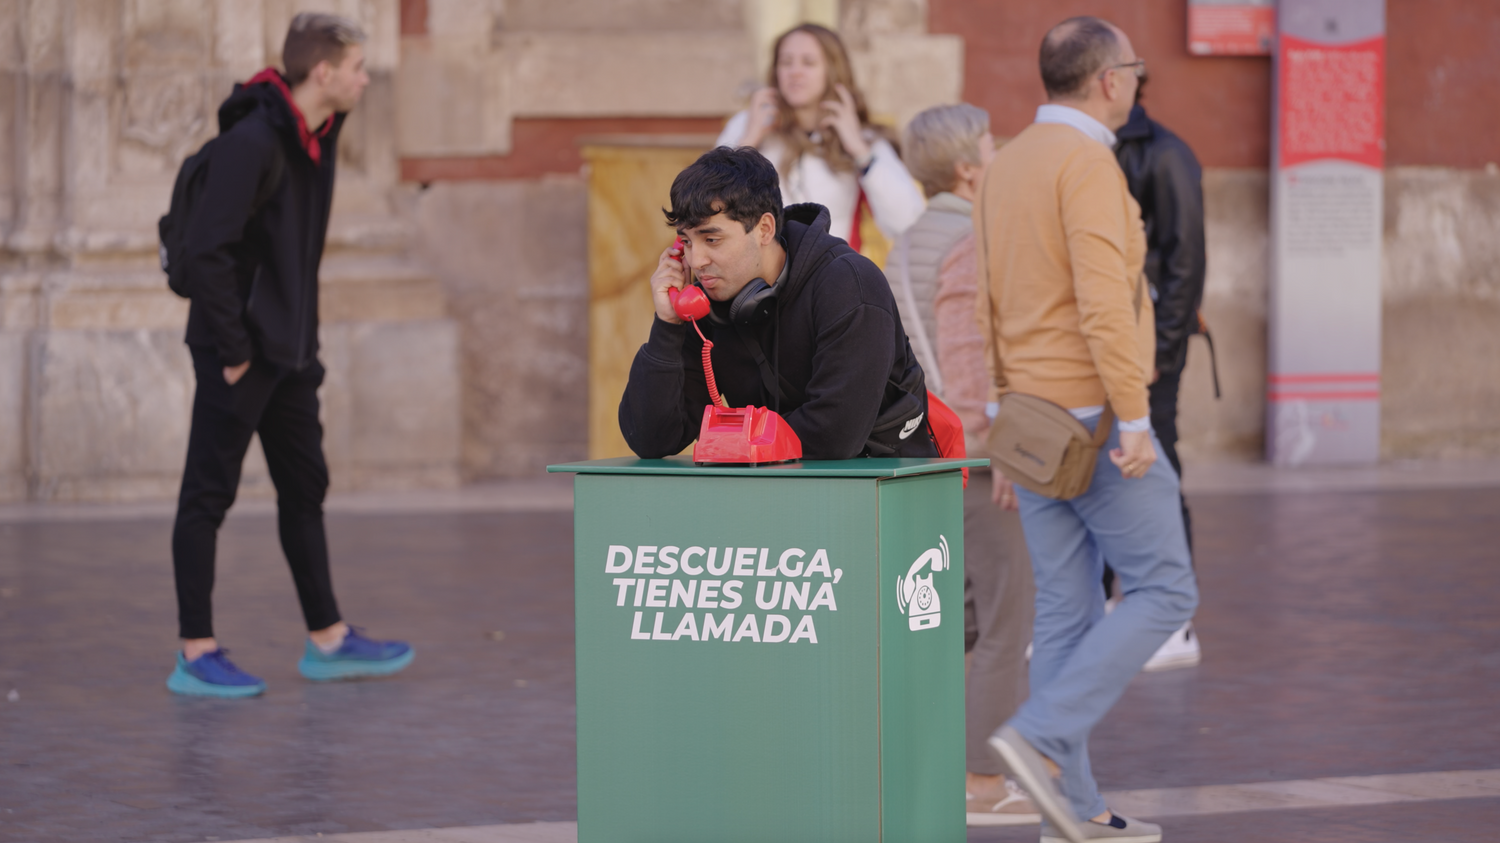 El teléfono que se ha hecho viral en Murcia